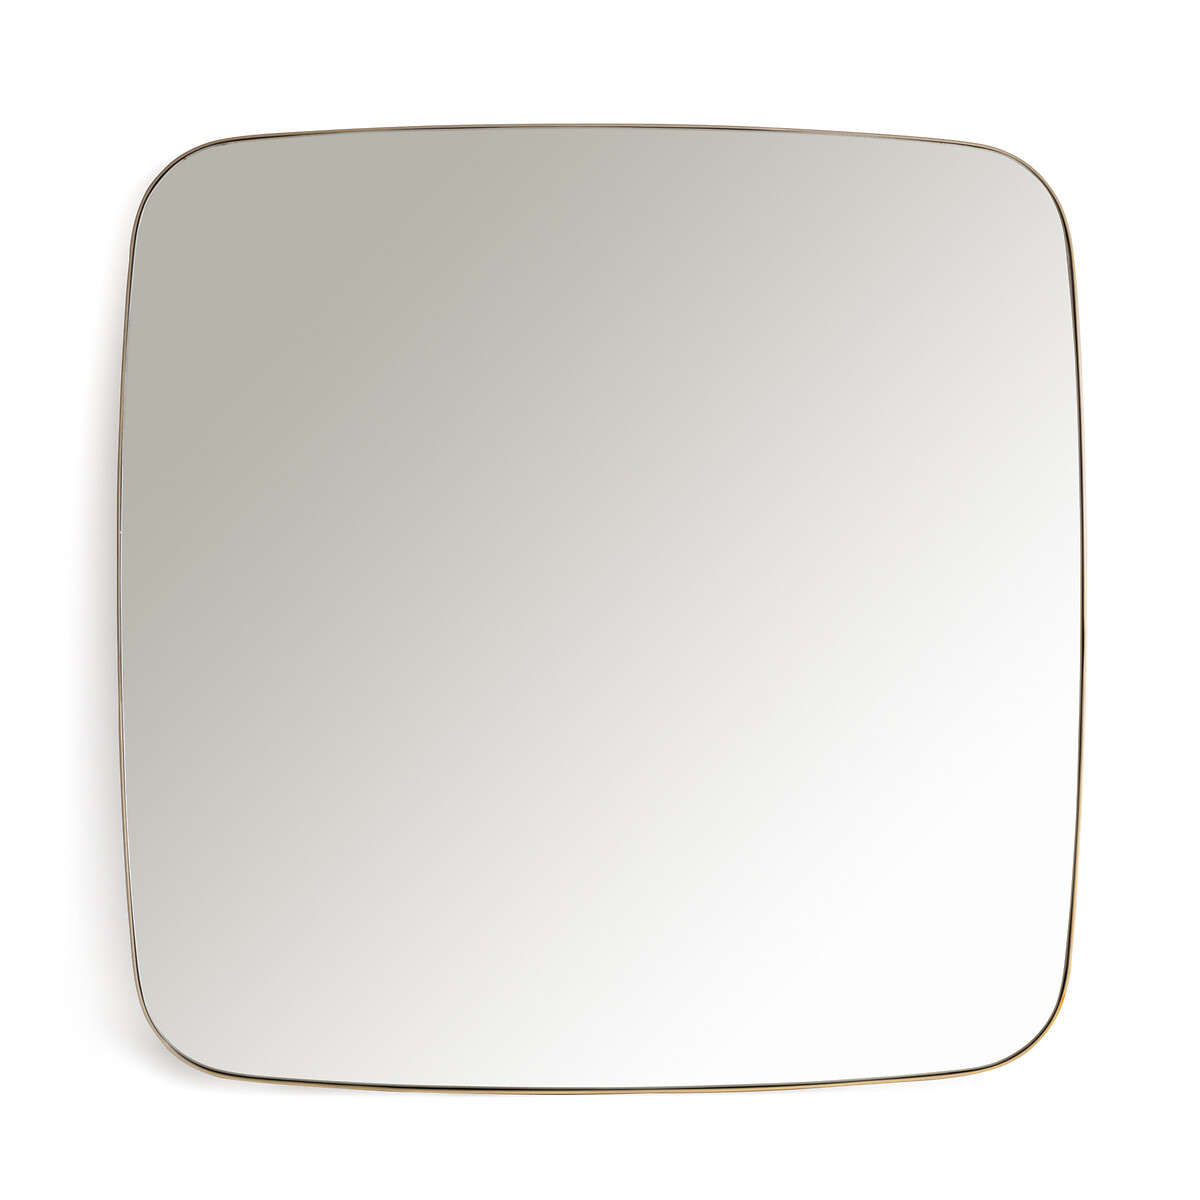 Зеркало квадратное с отделкой металлом В90 см Iodus единый размер желтый зеркало квадратное с отделкой ротангом 60x60 см nogu единый размер бежевый